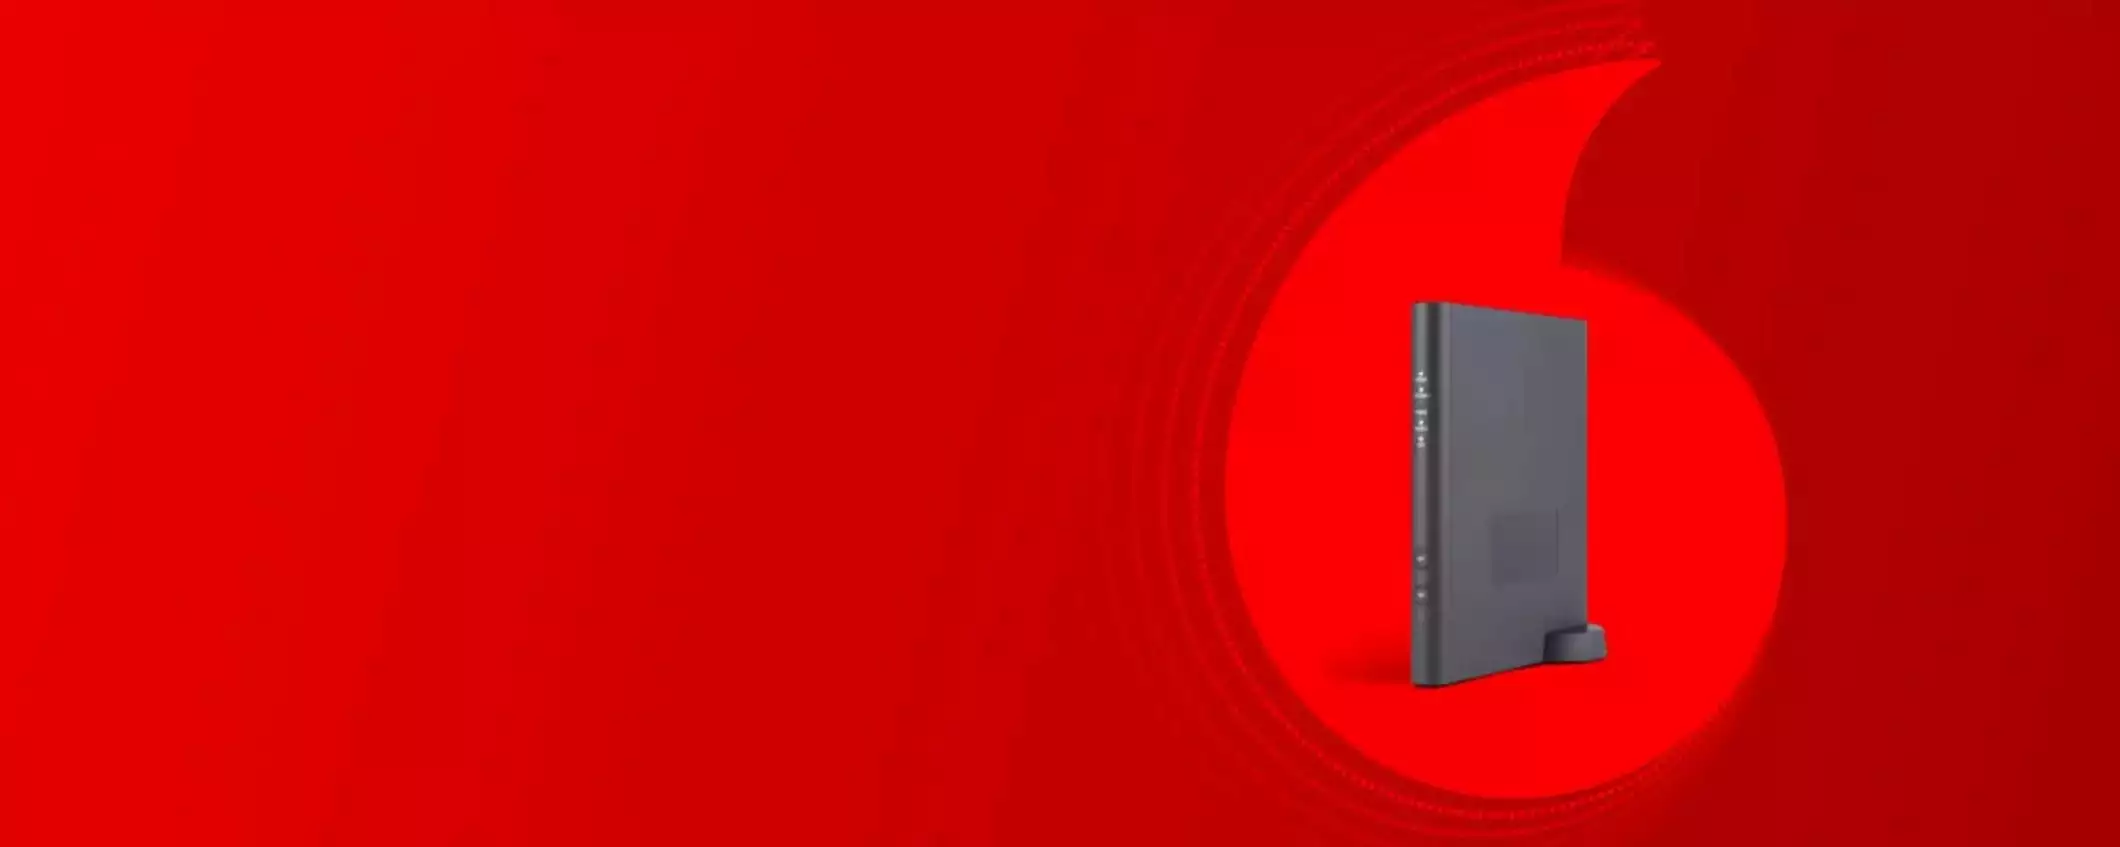 Promo Vodafone Fibra: €24.90 e costo di attivazione GRATUITO SOLO ONLINE